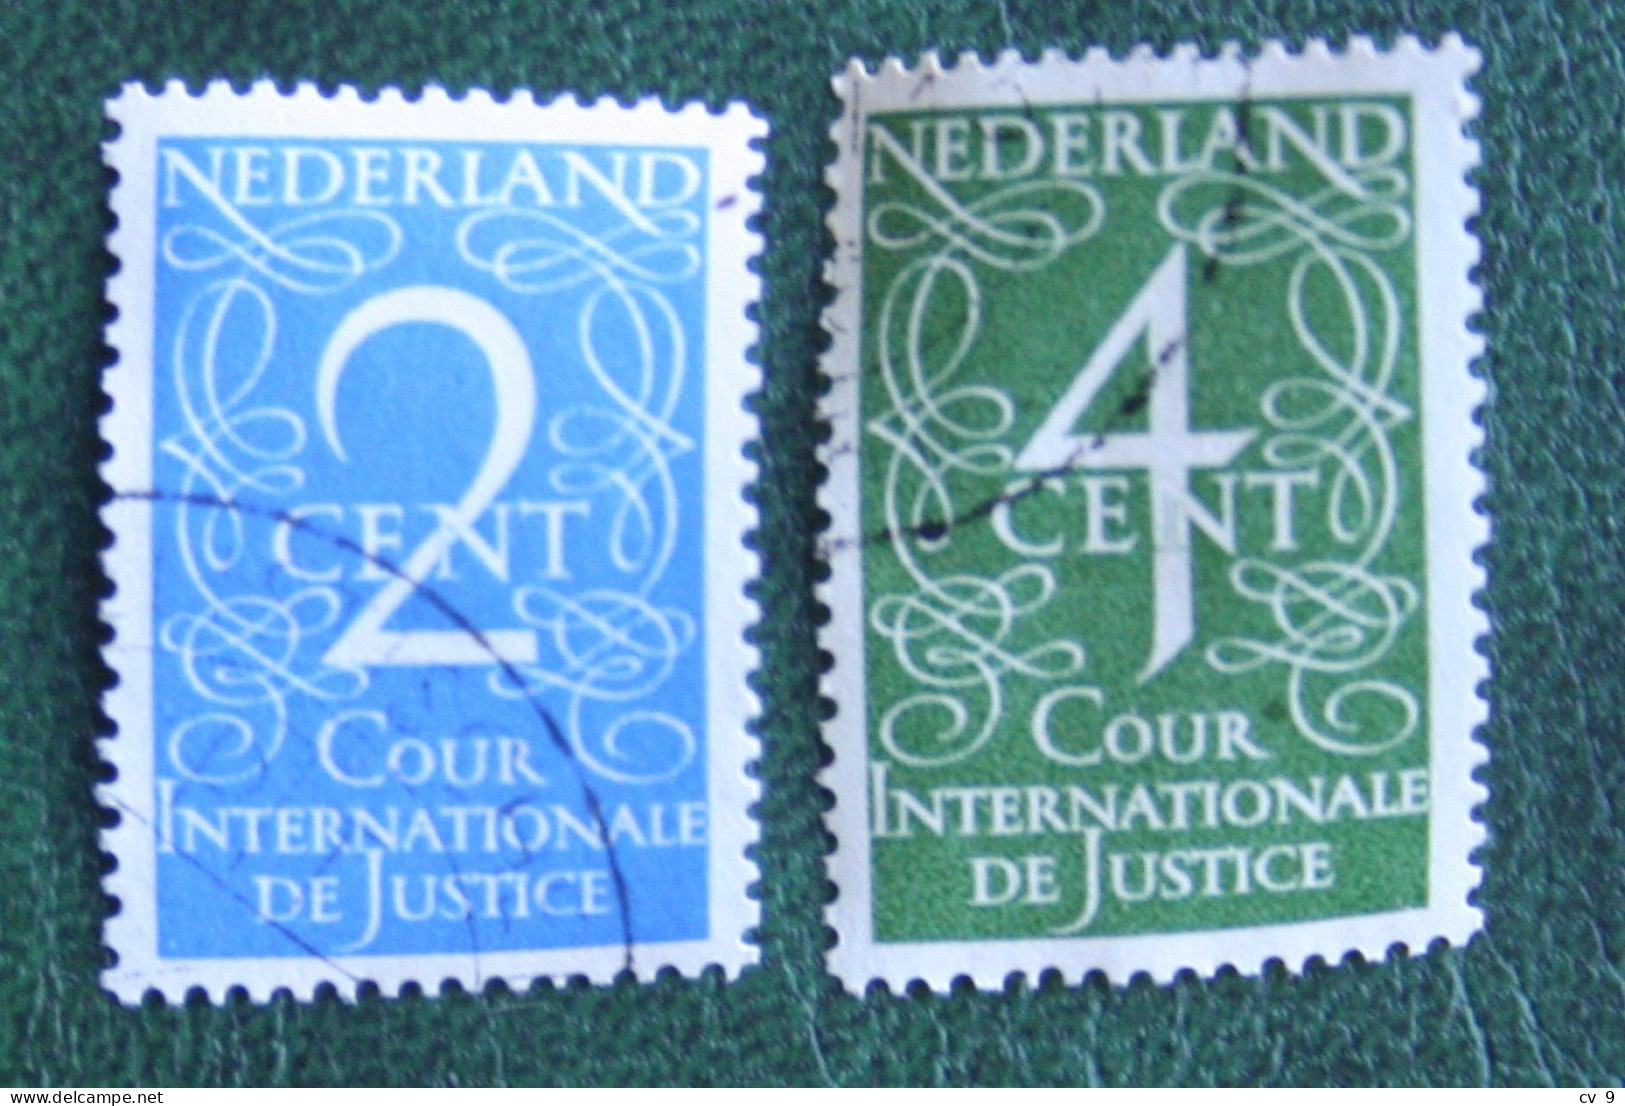 Dienst Cour Internationale De Justice NVPH D25-D26 D 25 (Mi 25-26) 1950 Gestempeld / Used NEDERLAND / NIEDERLANDE - Officials